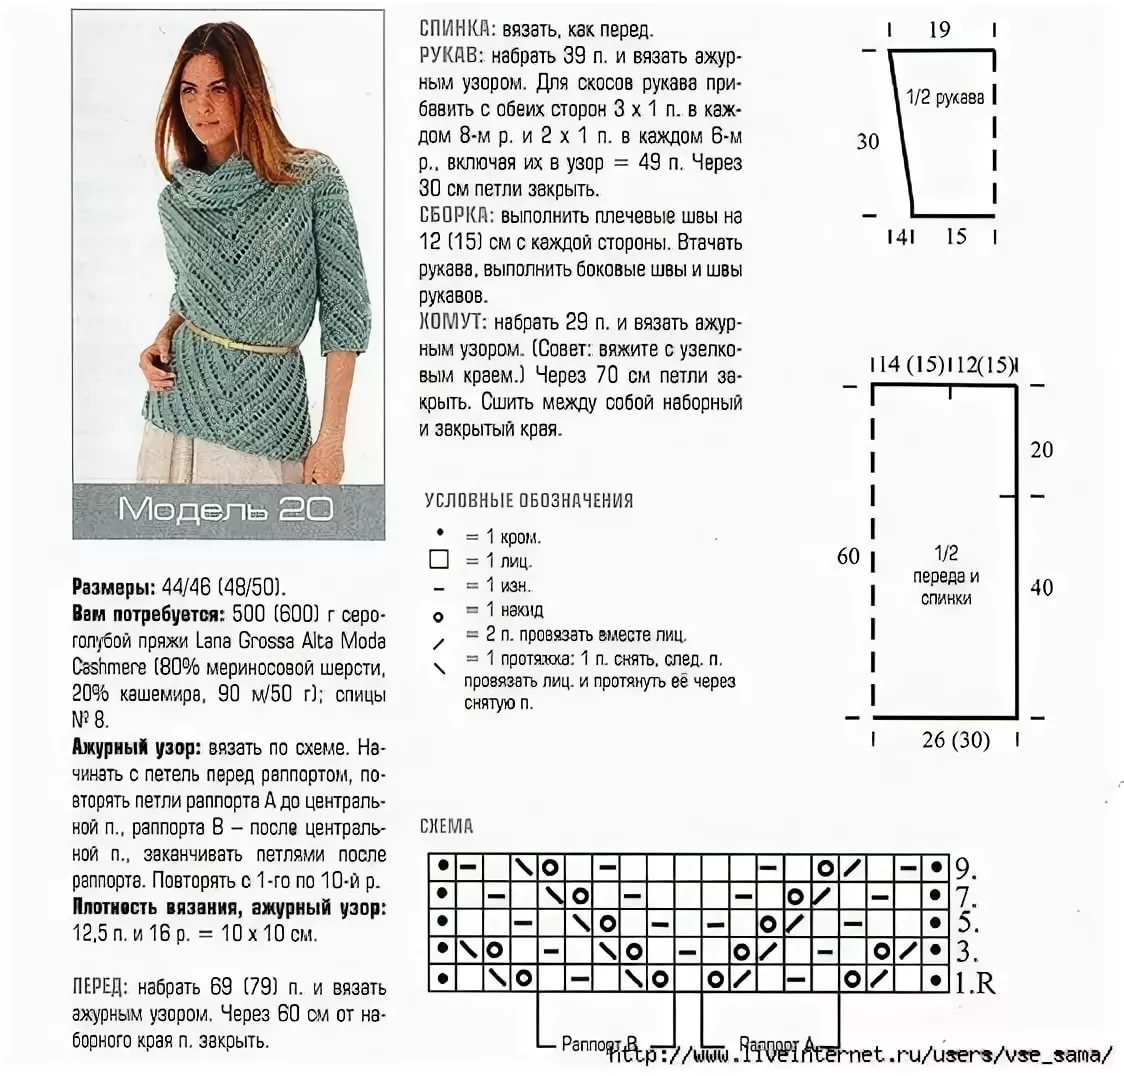 Описание Вязания Модного Джемпера Для Женщин